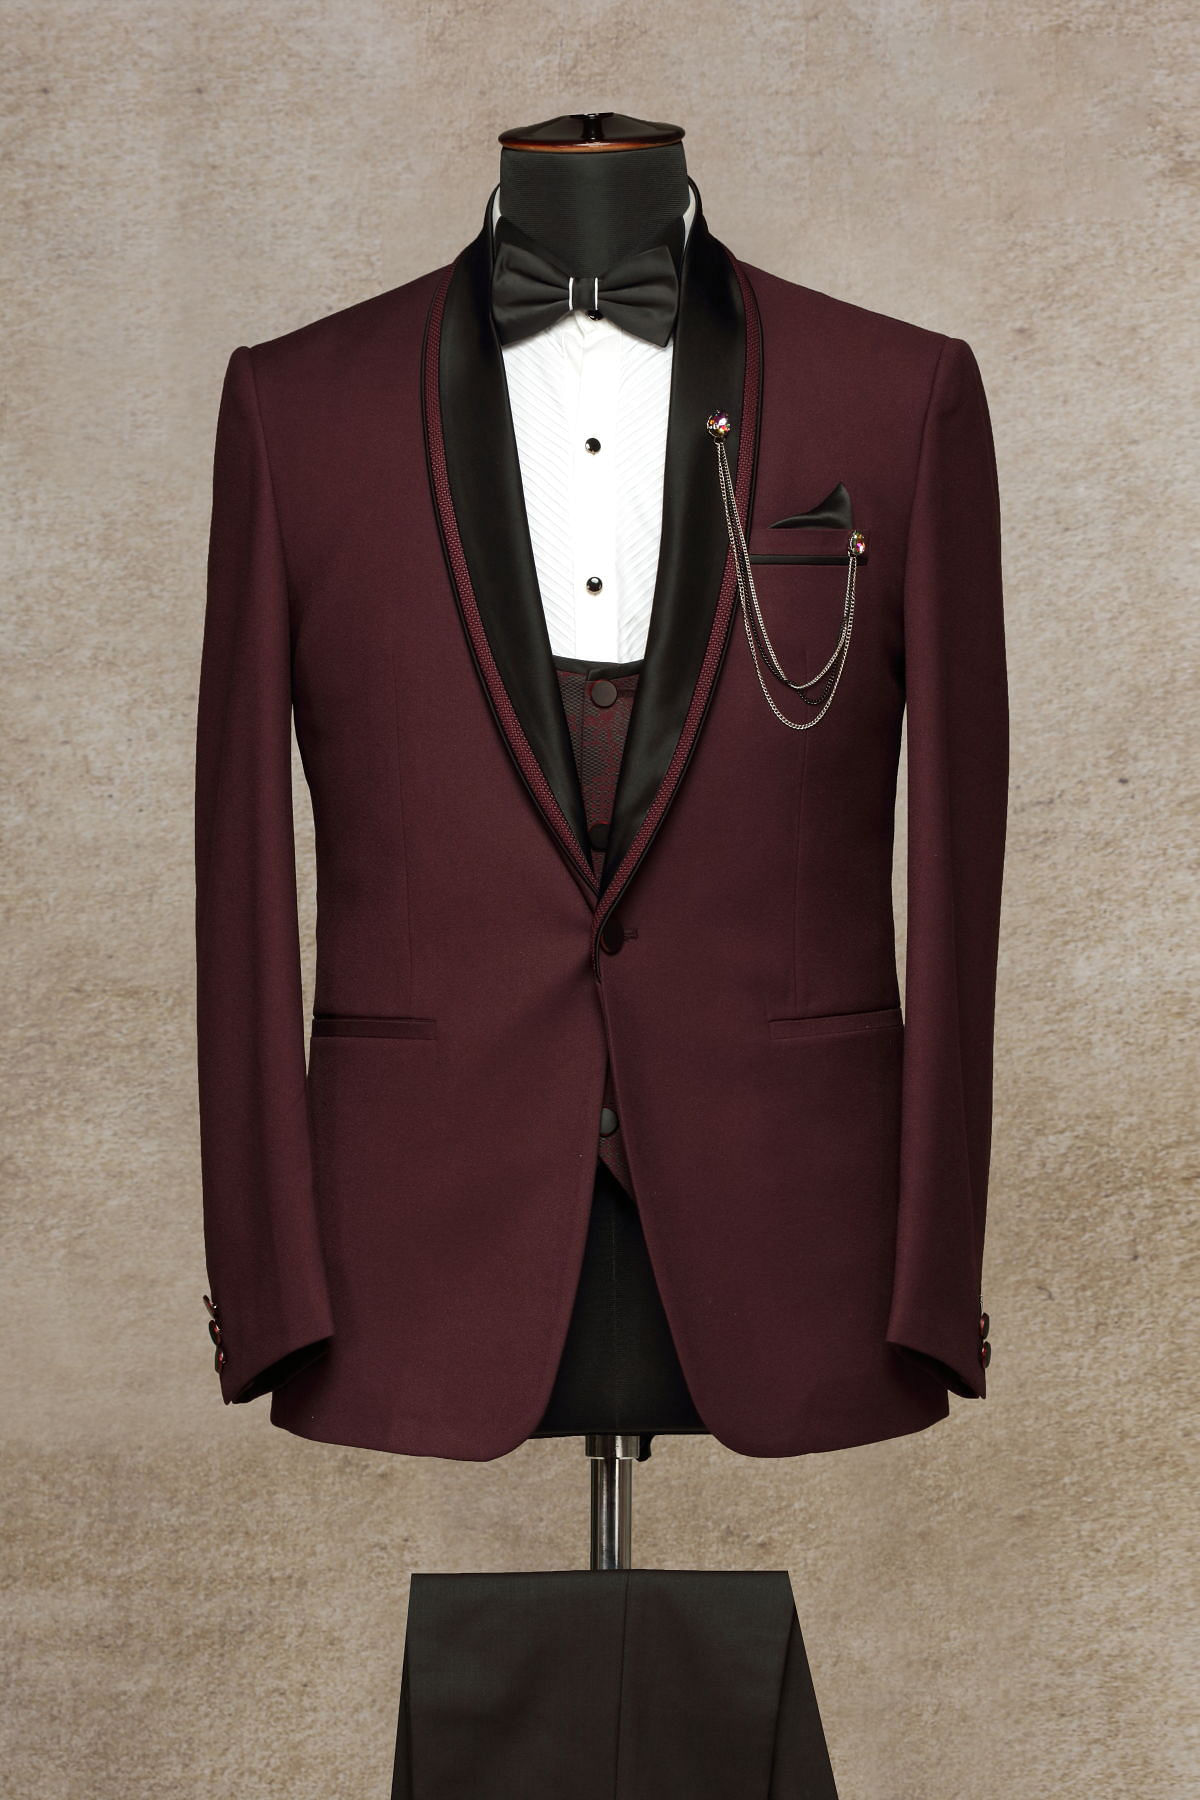 Men Suits, Suits for Men , Burgundy Tuxedo Suit , Formal Fashion Slim Fit  Suit, Wedding Suit - Etsy